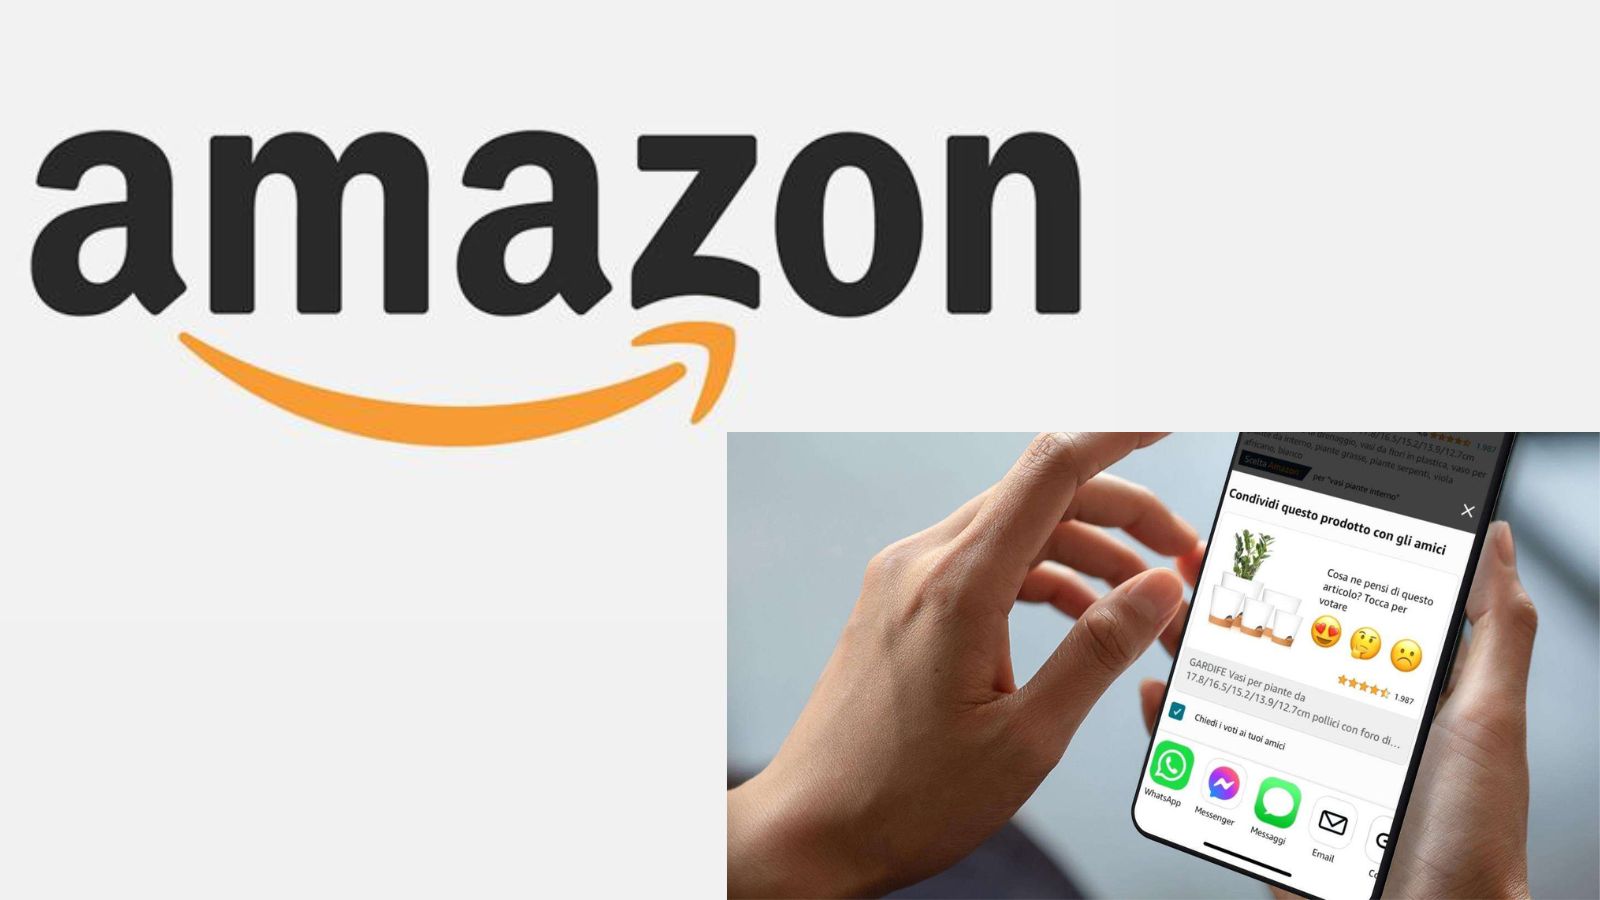 Amazon, nuova funzionalità